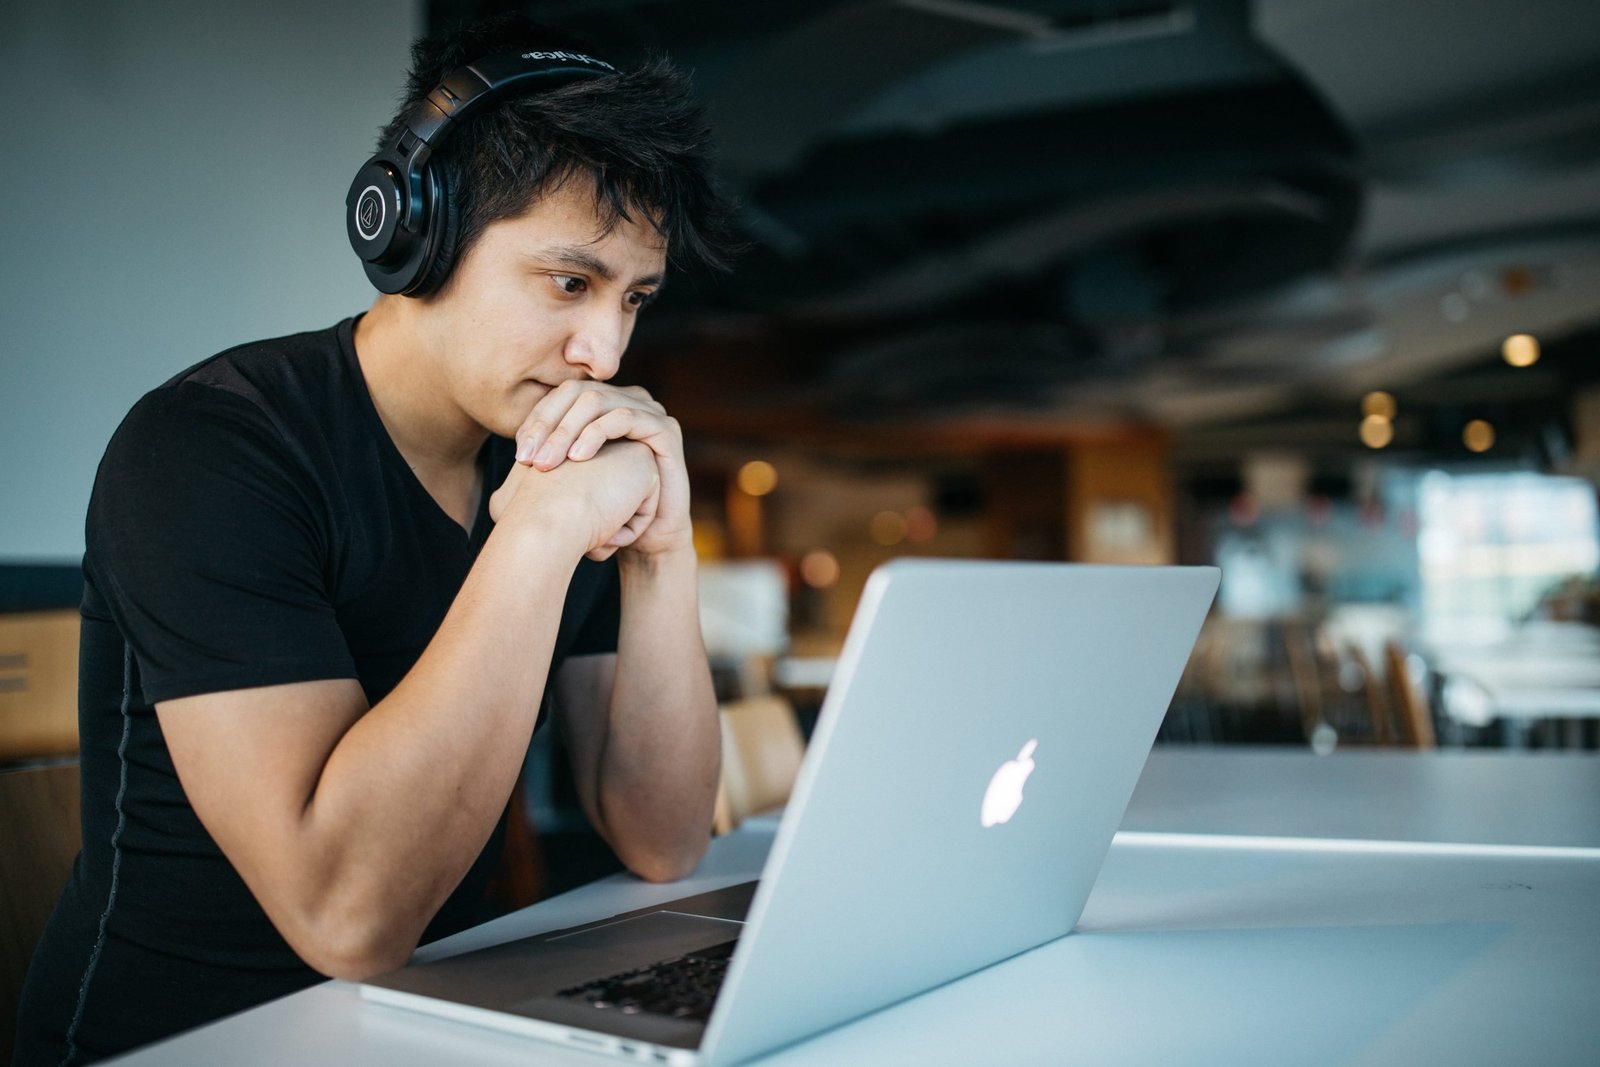 Man wearing headphones focused on a laptop